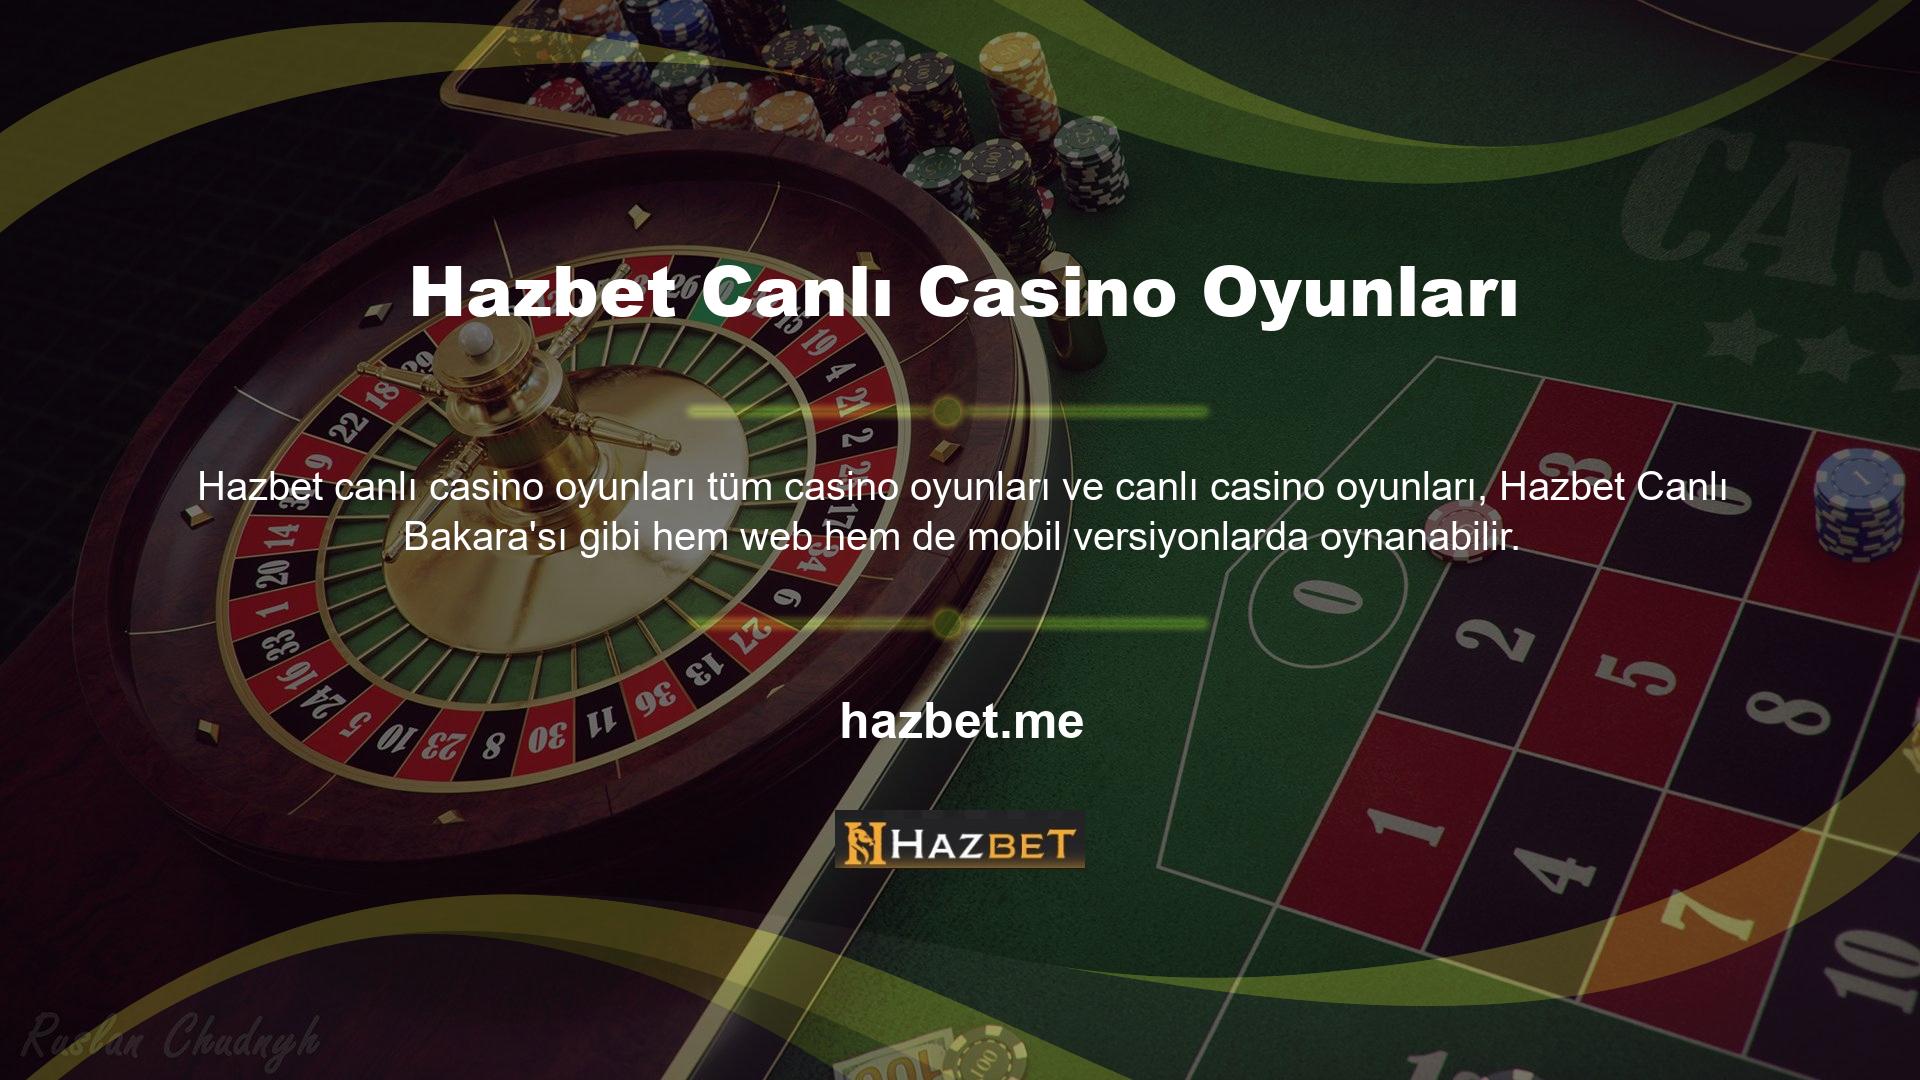 Tüm offshore casino sitelerinde olduğu gibi bu web sitesinin sayfalarına erişim engellenebilir